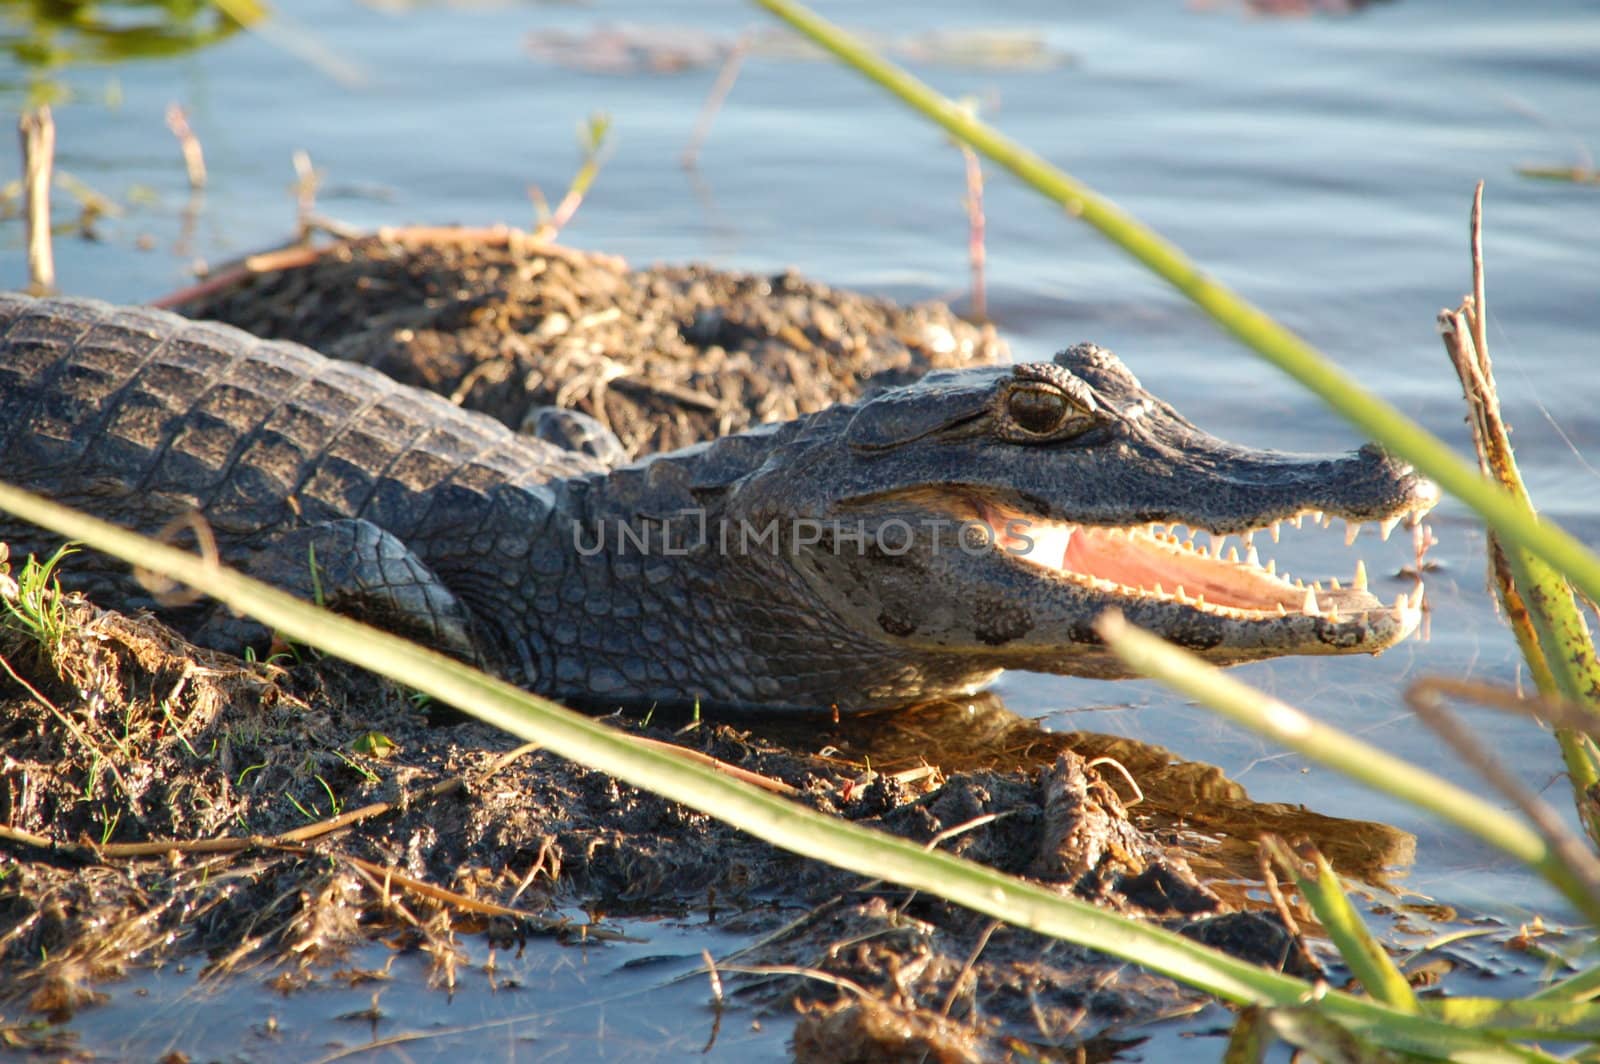 Alligator in Argentine Everglades waiting for prey